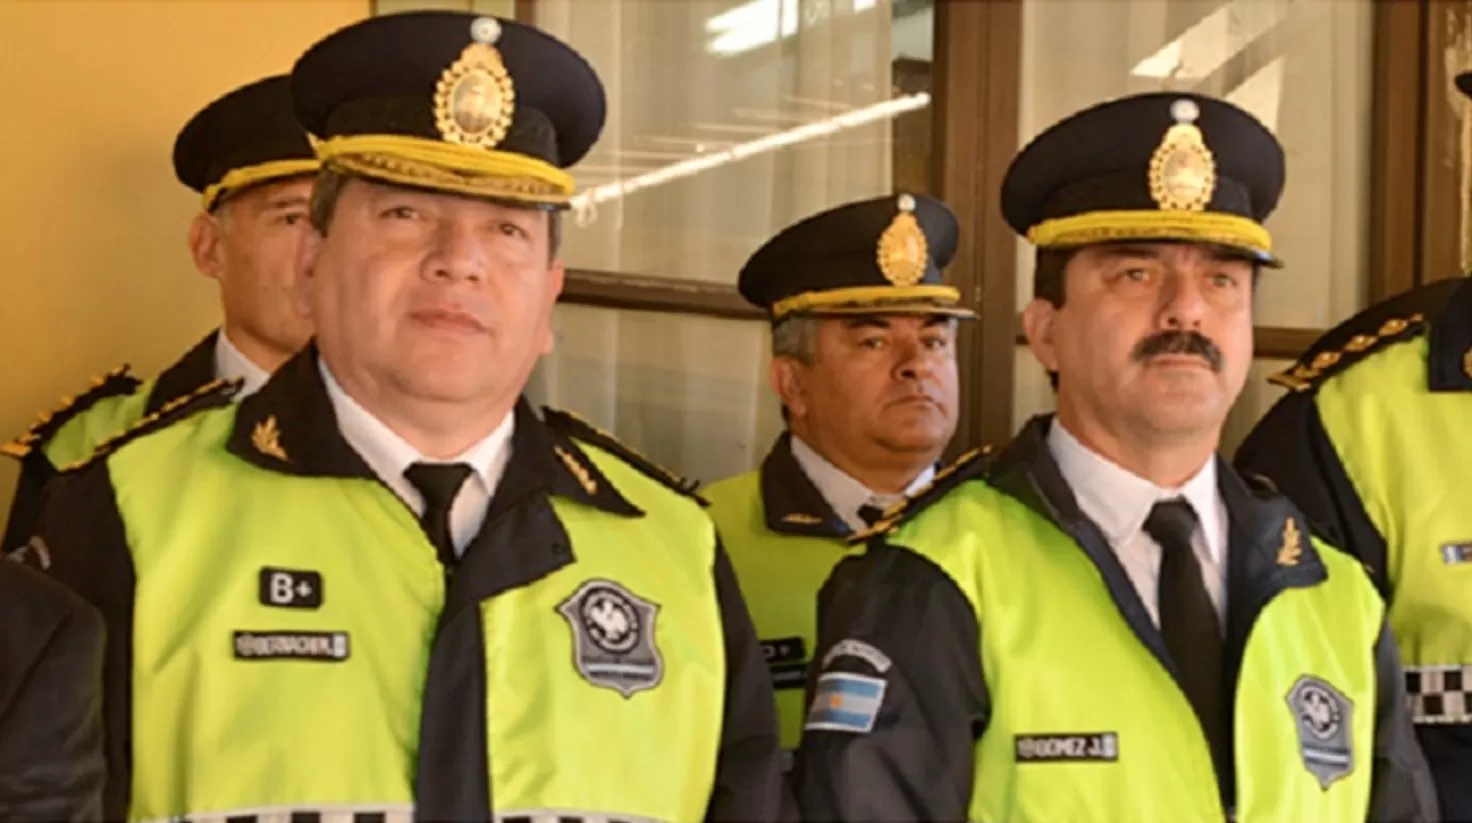 LAS AUTORIDADES. El jefe y el subjefe de la Policía de Tucumán.